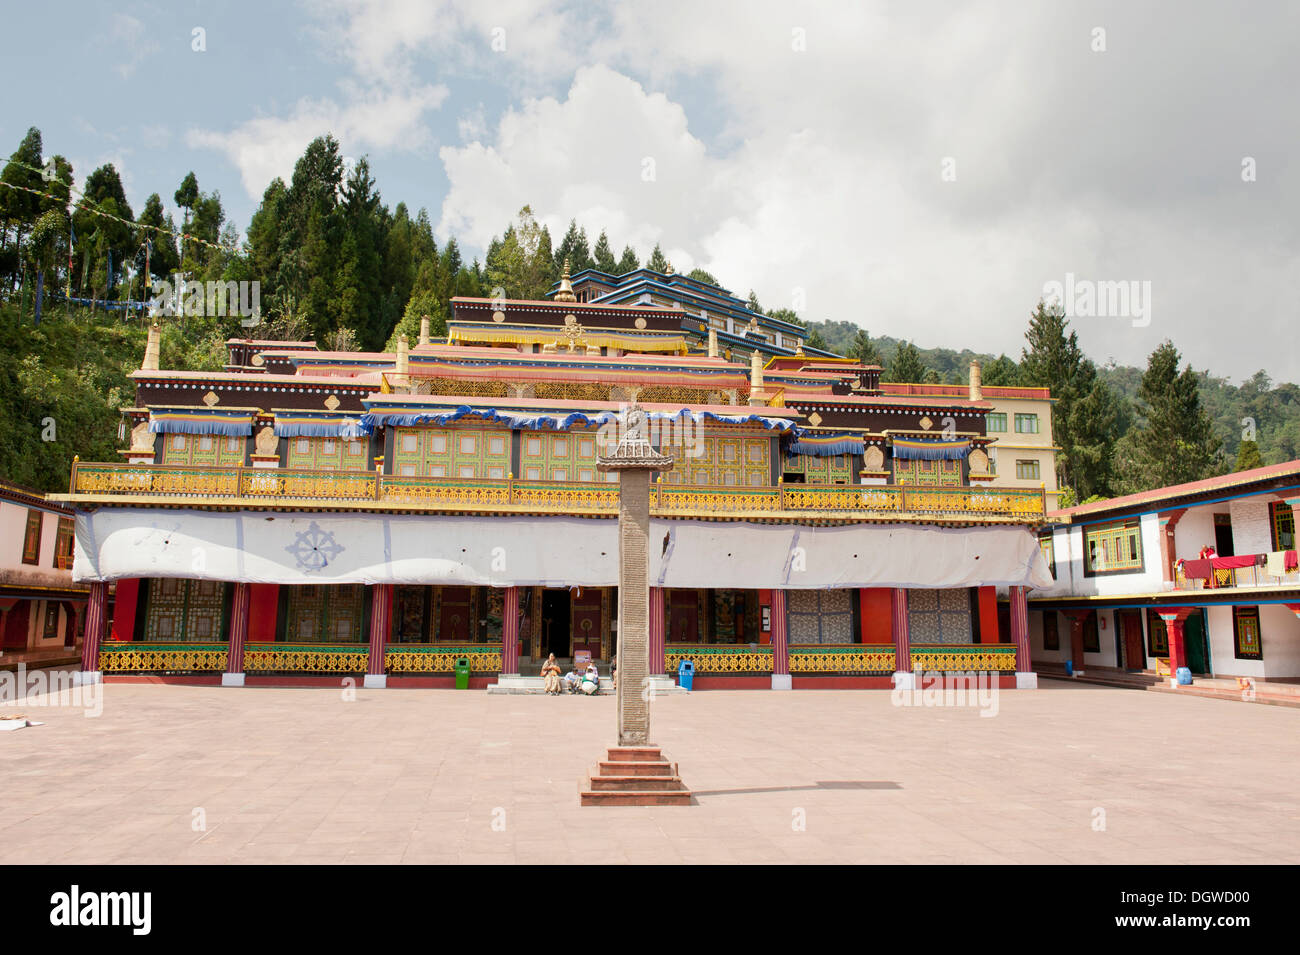 Le bouddhisme tibétain, Karma Kagyu, Monastère de Rumtek près de Gangtok, Sikkim, Himalaya, Inde, Asie du Sud, Asie Banque D'Images